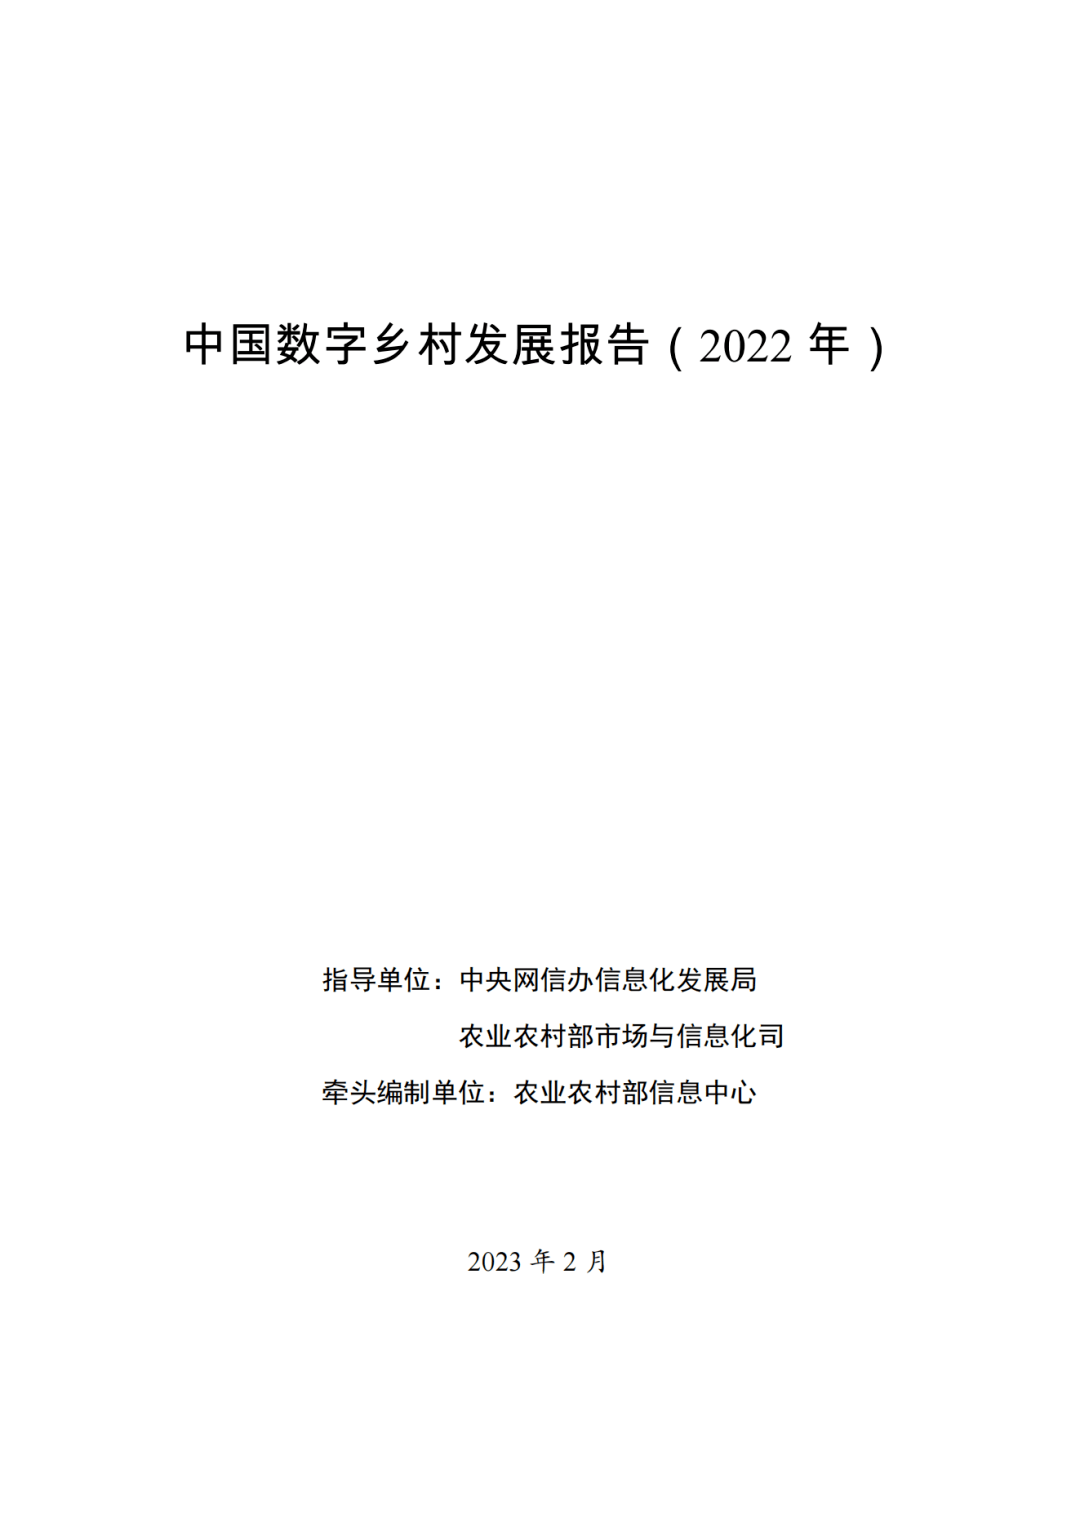 农业信息研究所-中国数字乡村发展报告（2020年）-机构资讯-慧博投研资讯